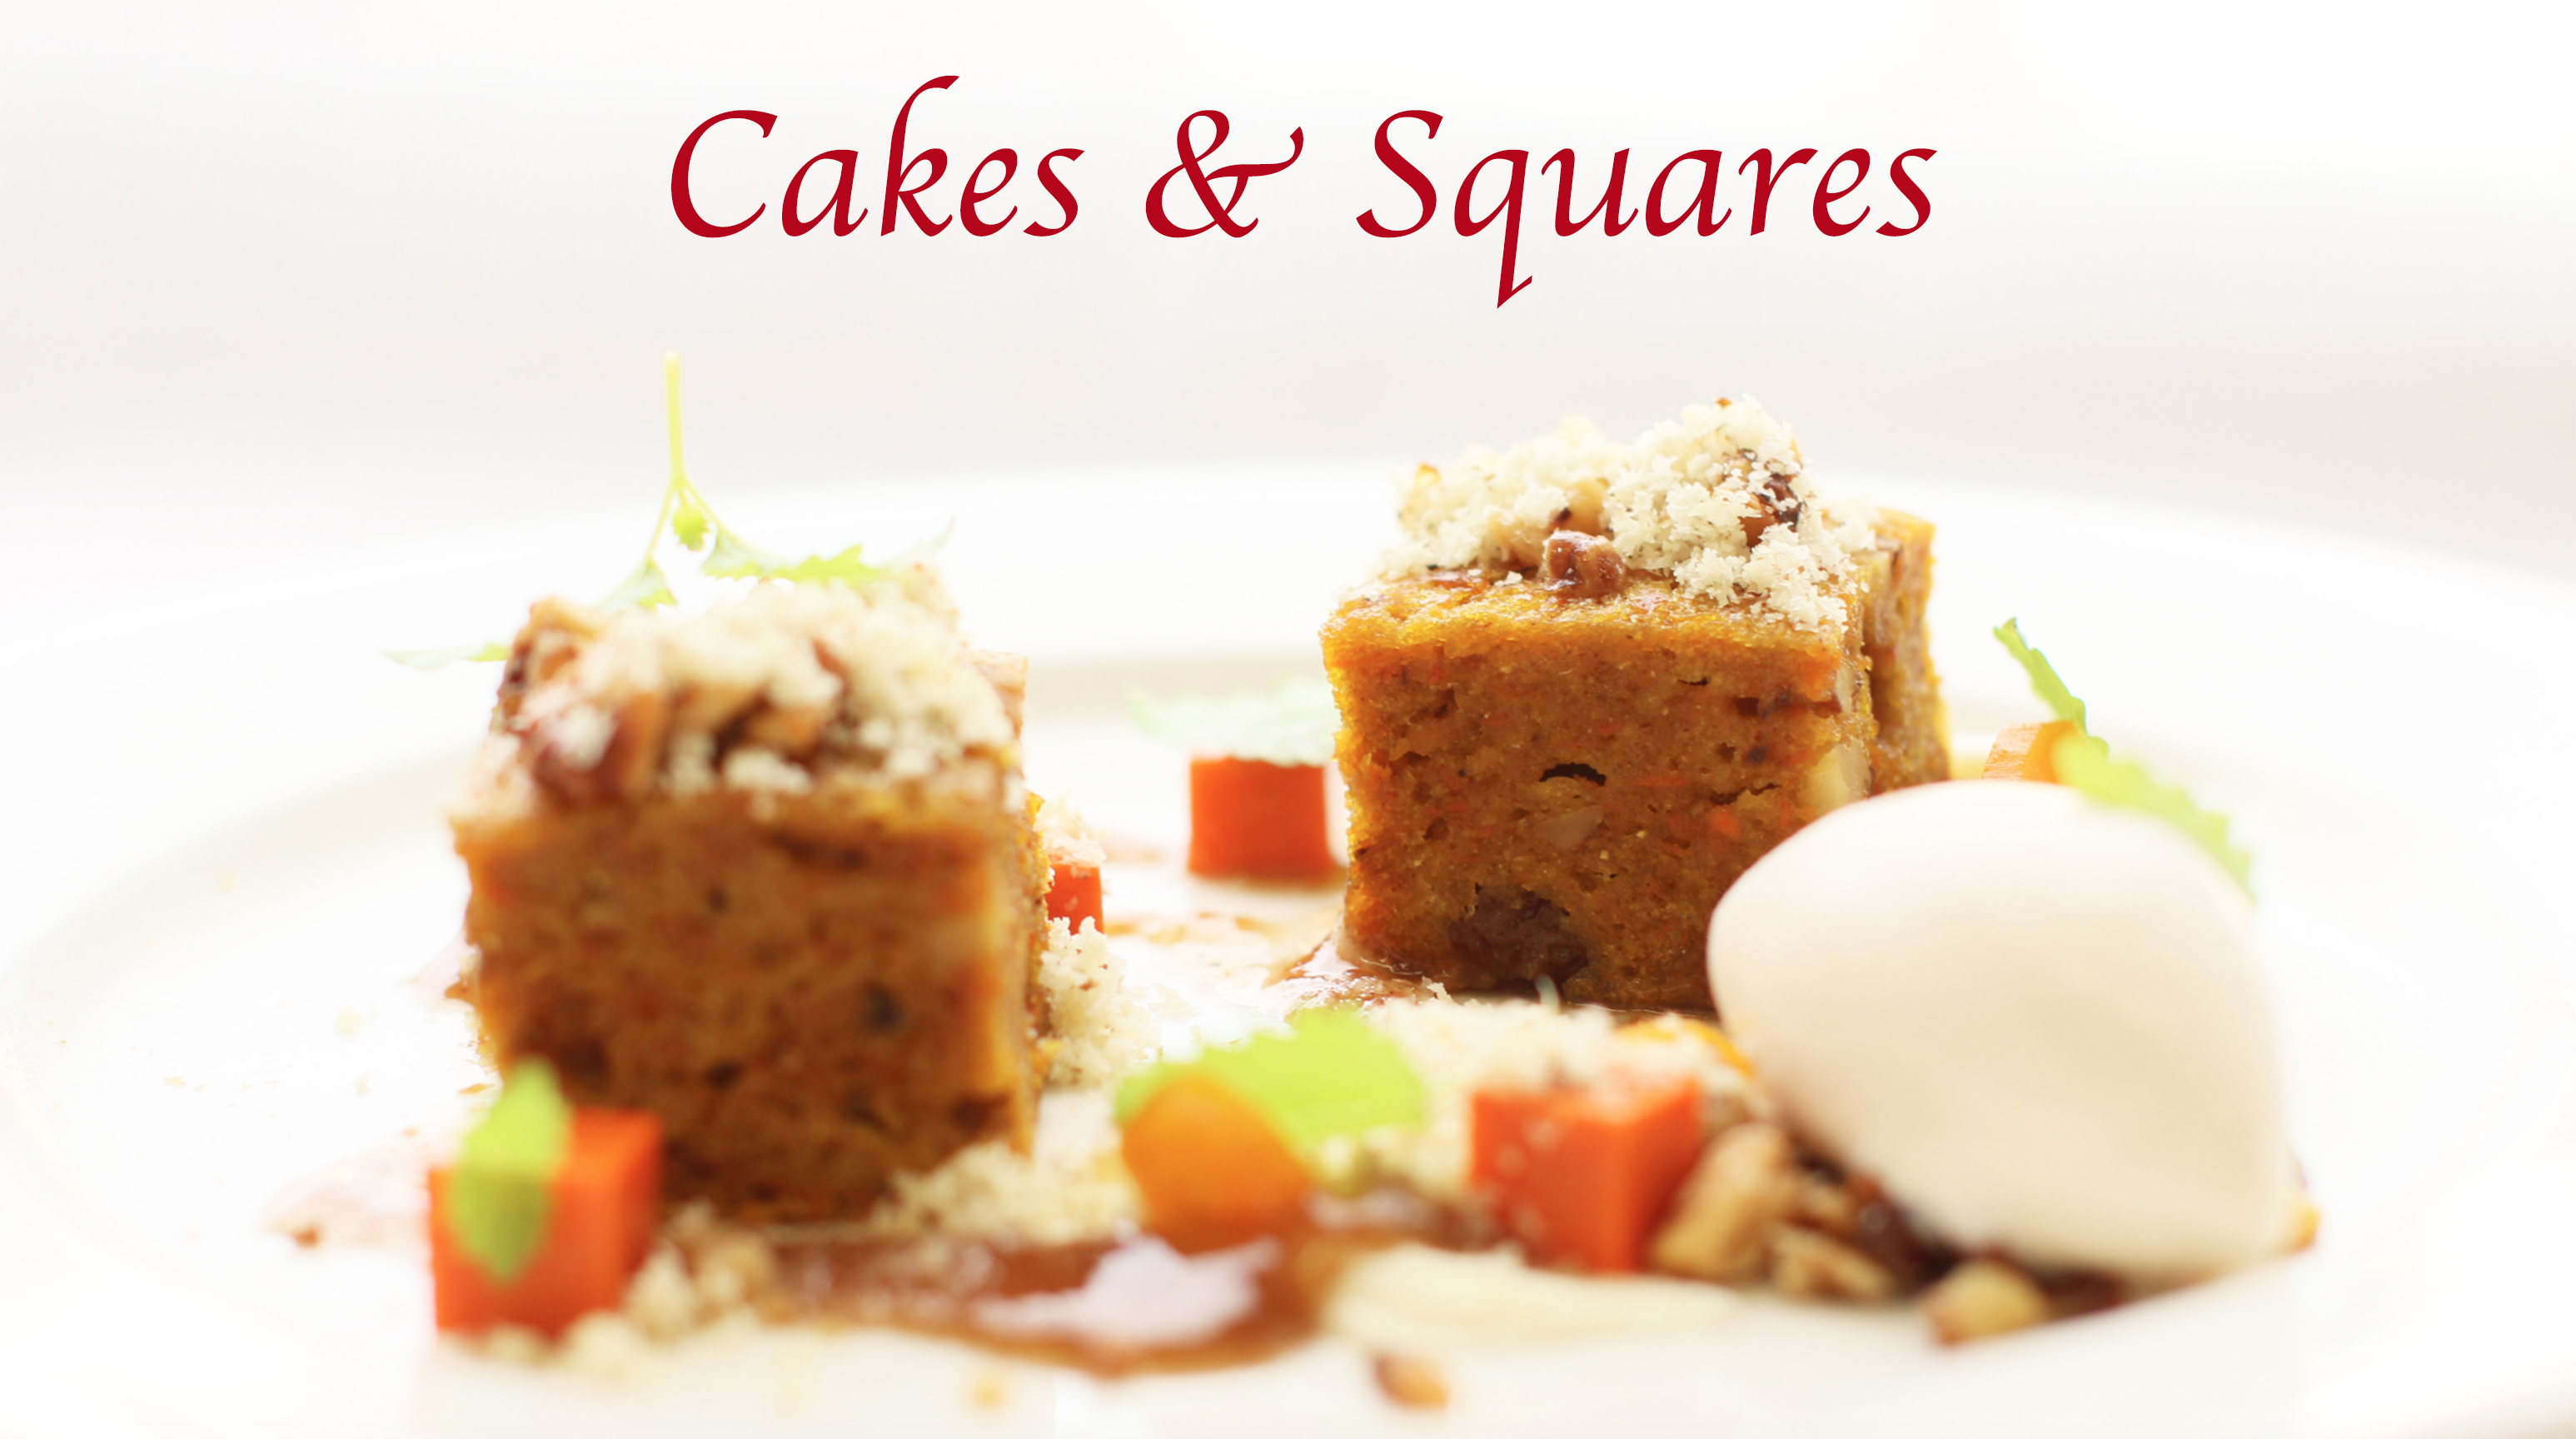 Cakes & Squares